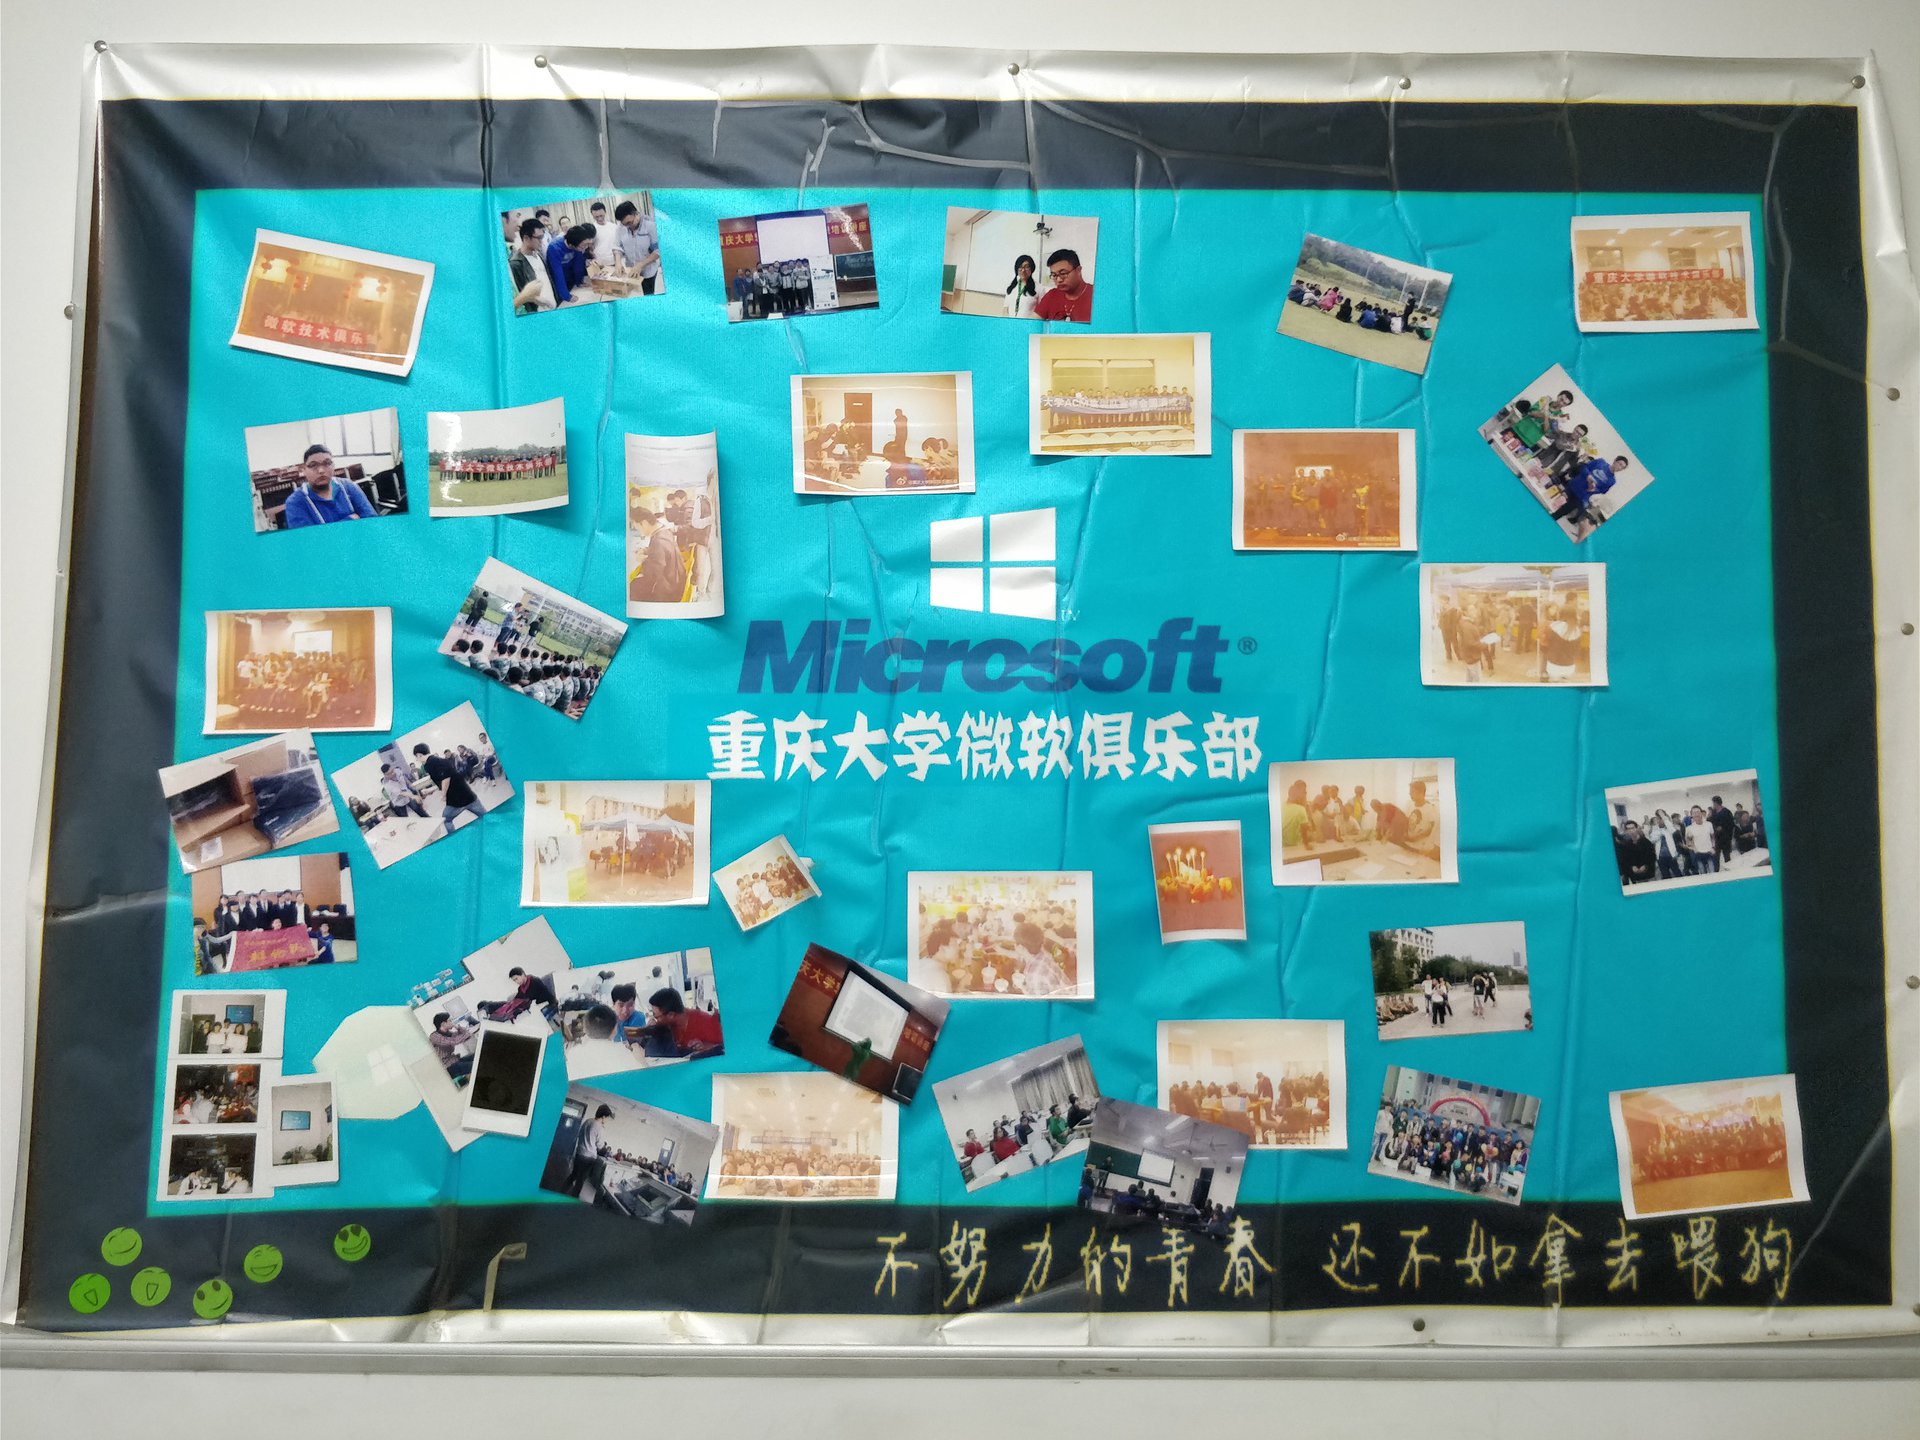 重慶大學微軟技術俱樂部